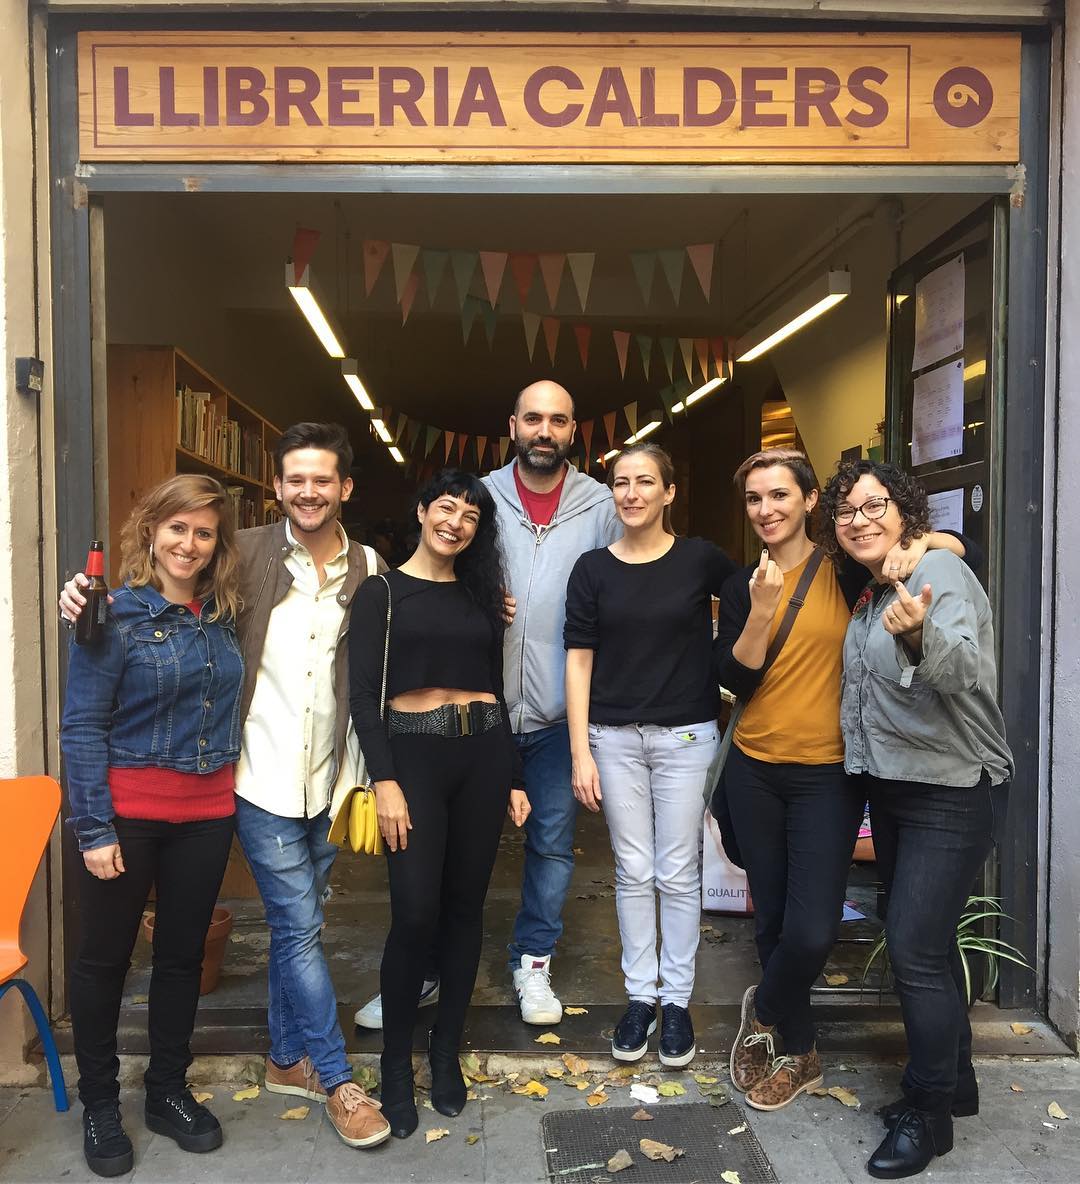 Signo "Asja" i "Barcelona-Buenos Aires" a la parada de la llibreria Calders de l'Antic Teatre (de 13 a 14h)